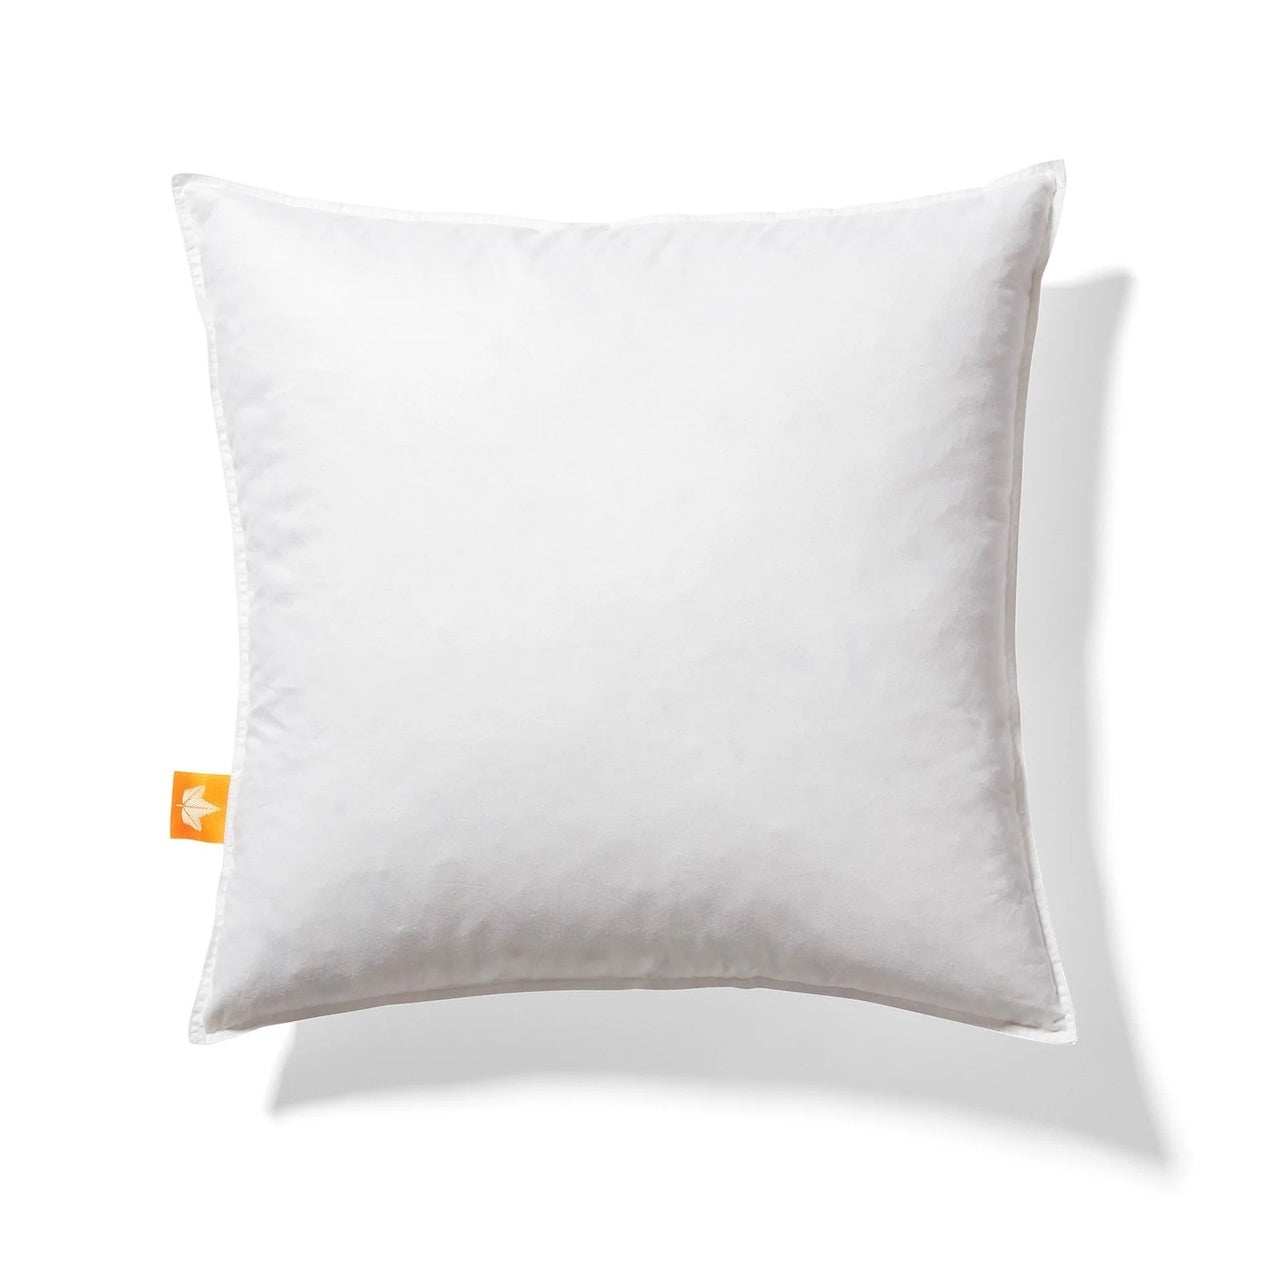 White goose feather cushion 18x18 29oz